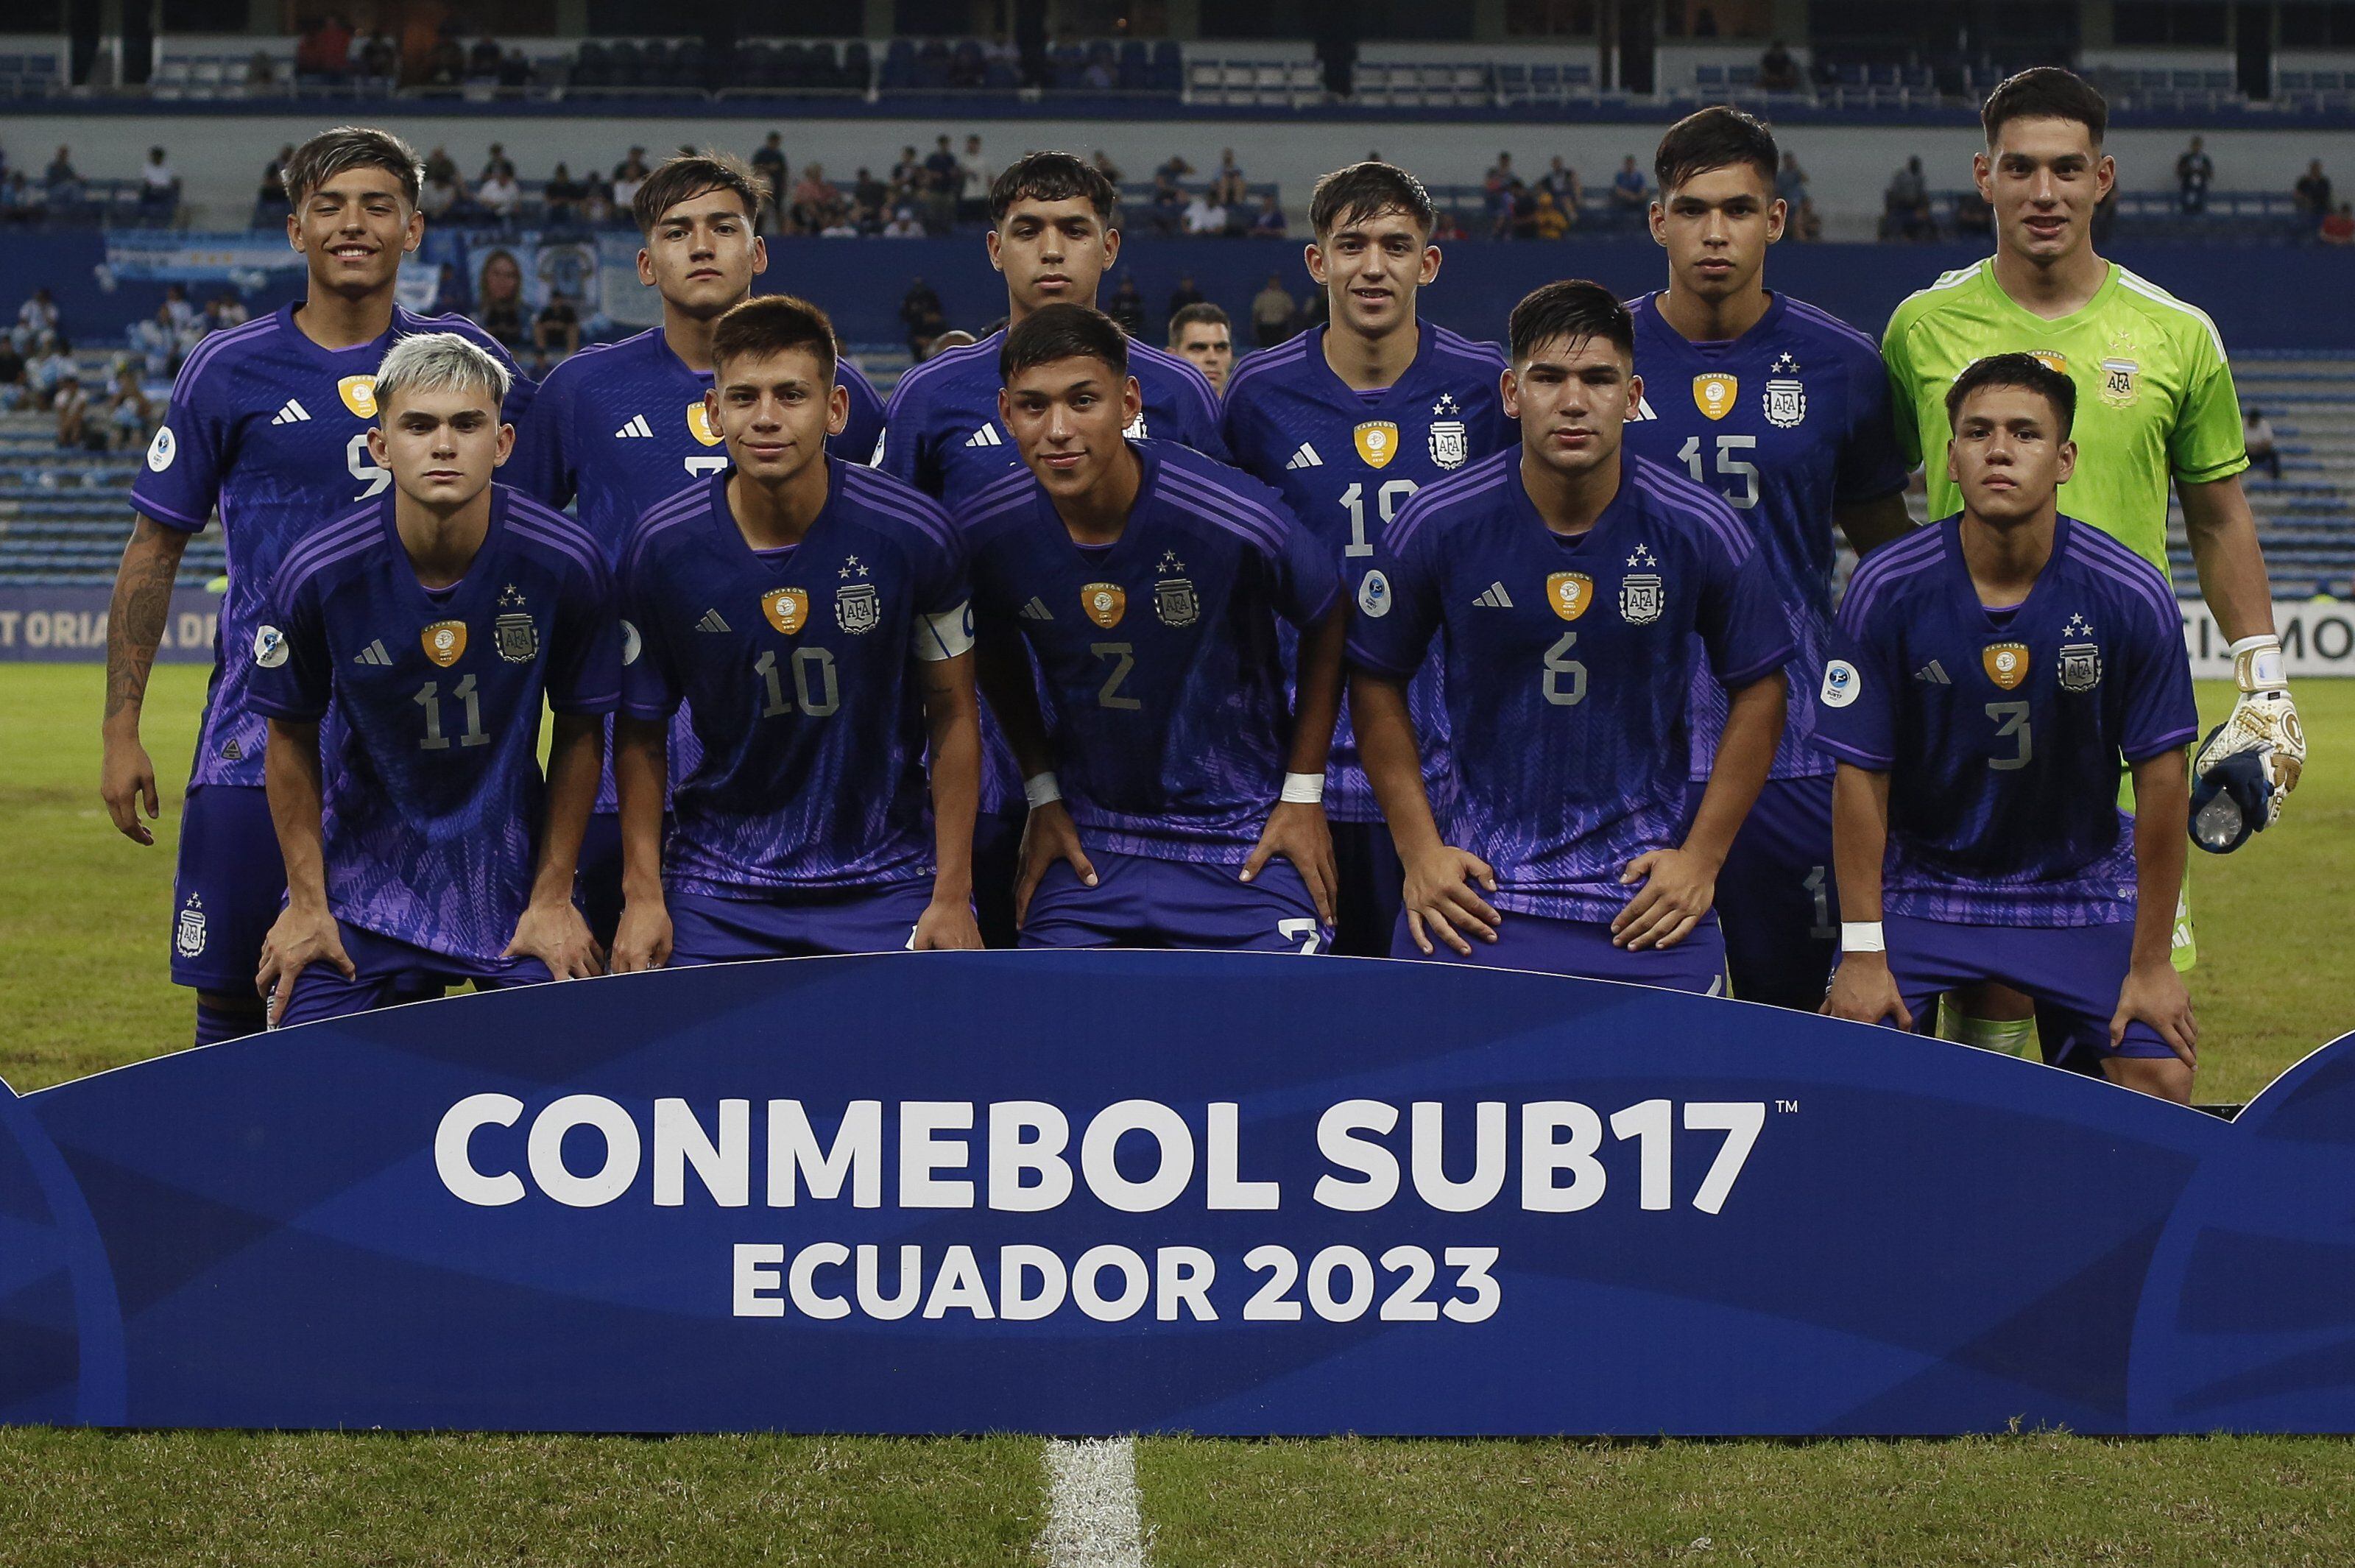 La selección argentina Sub 17 se clasificó primera e invicta de la fase de grupos